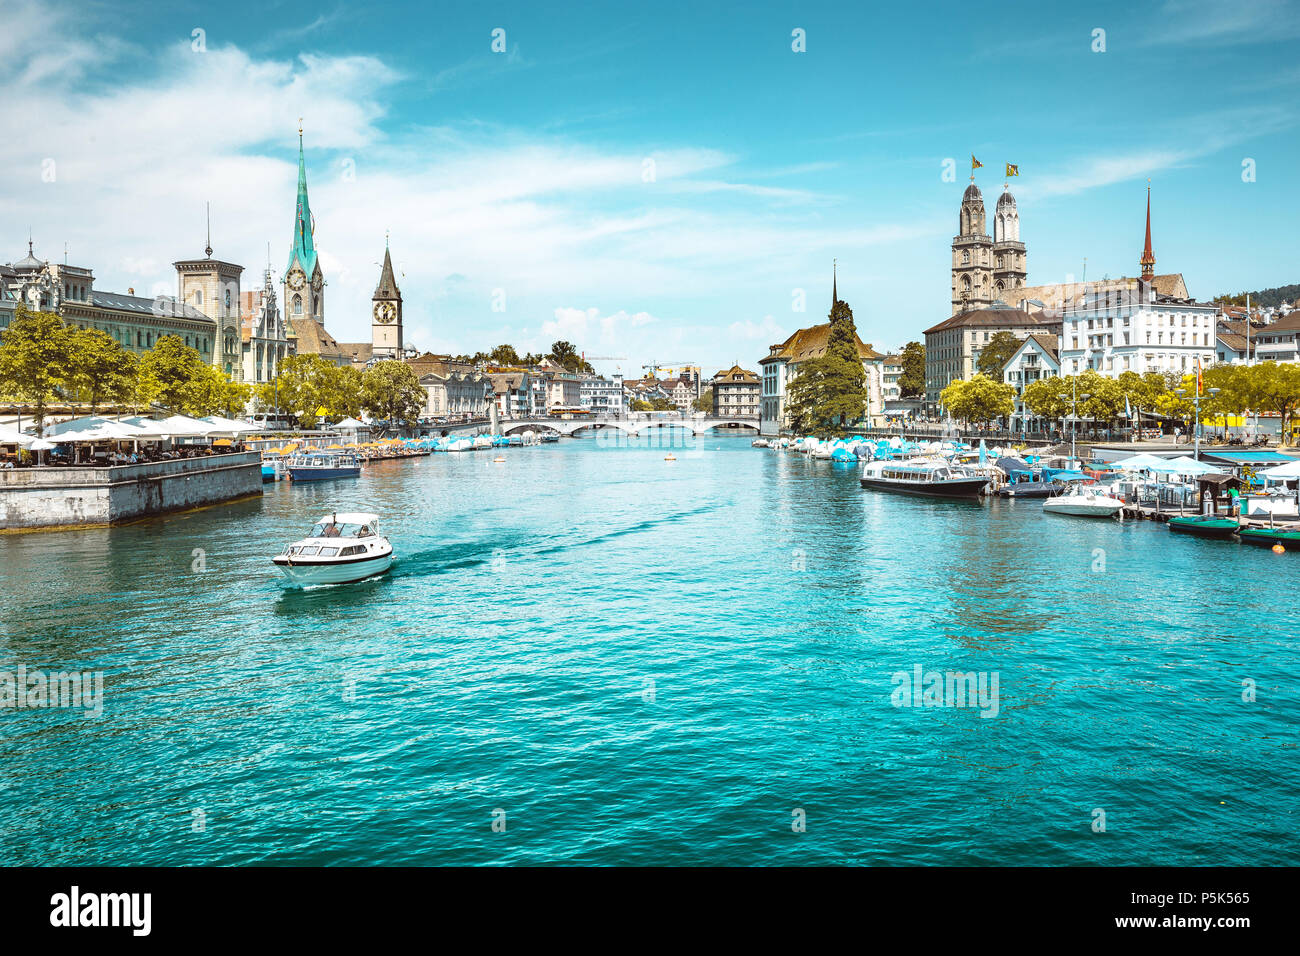 Vista panoramica del centro di Zurigo con le chiese e le barche sul bel fiume Limmat in estate, nel Cantone di Zurigo, Svizzera Foto Stock